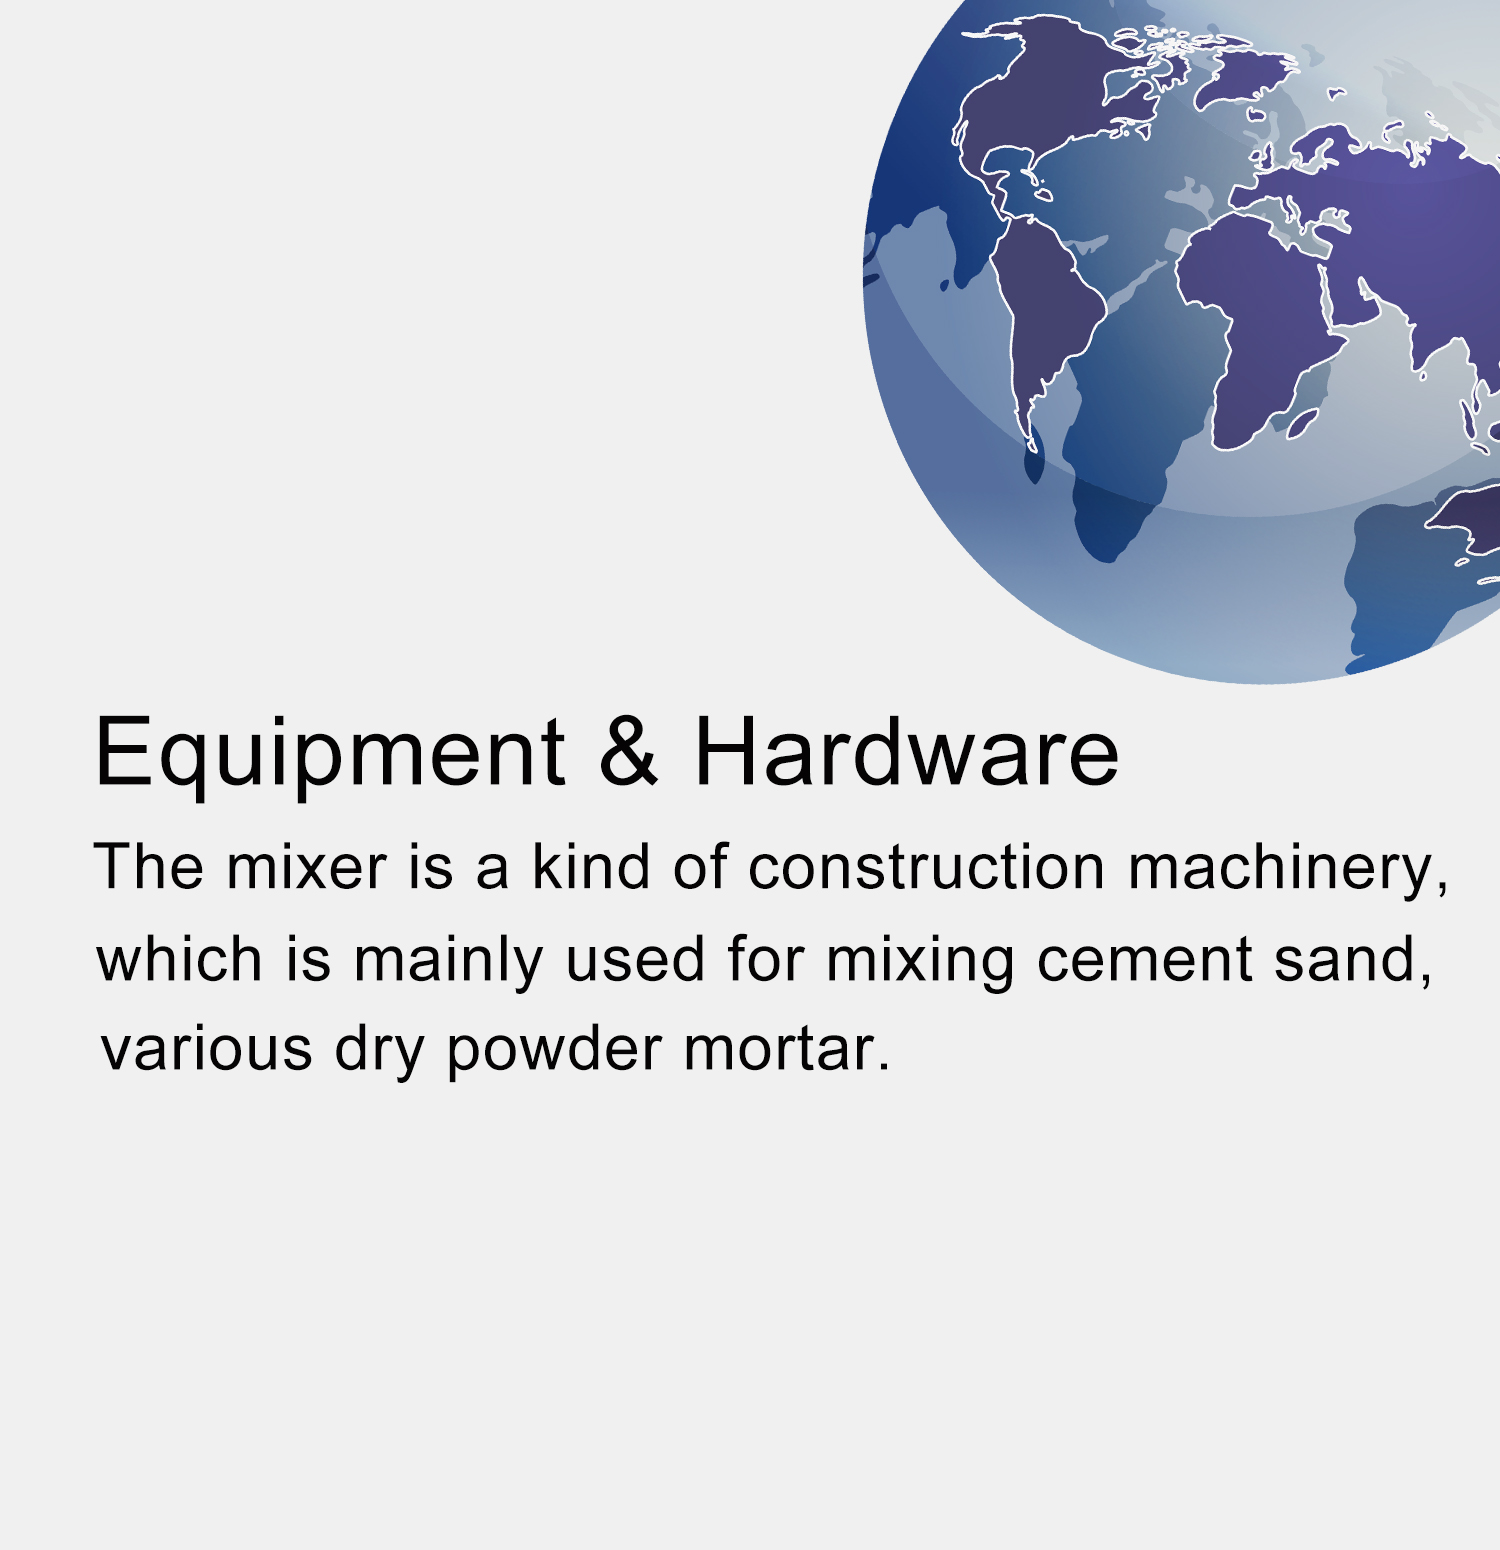 Equipment & Hardware